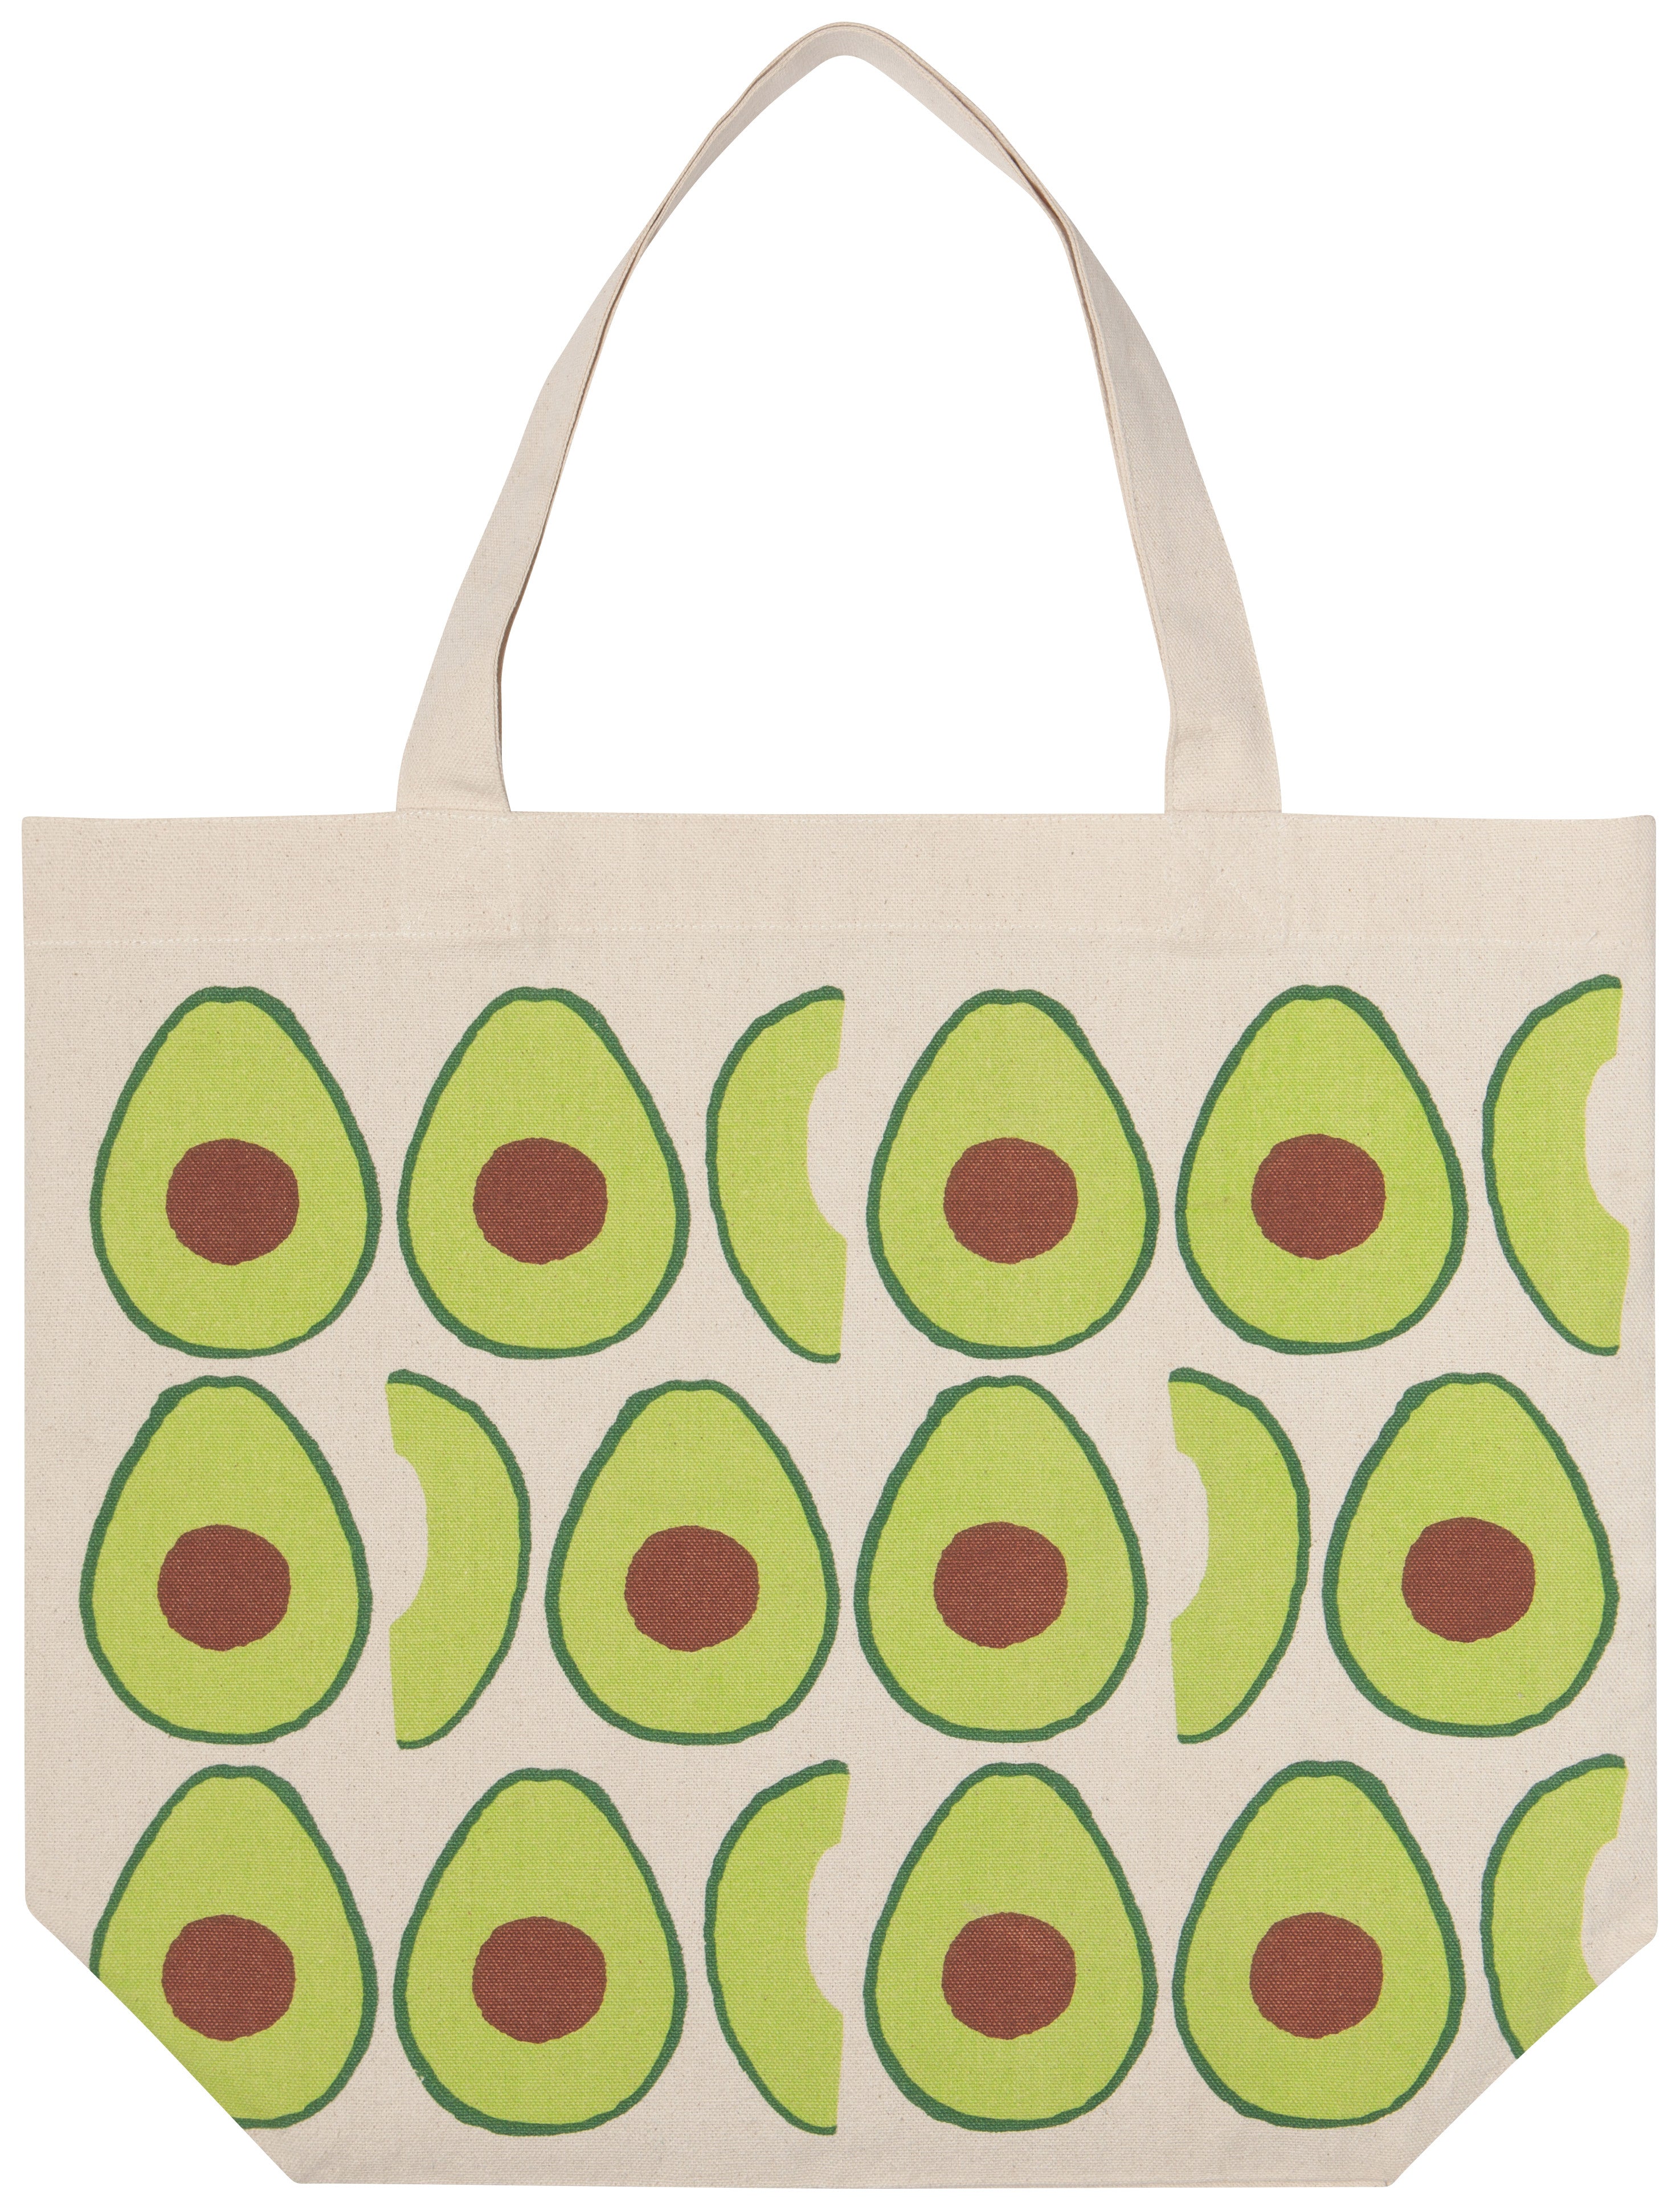 Avocados Tote Bag | Now Designs Danica - Oscar & Libby's